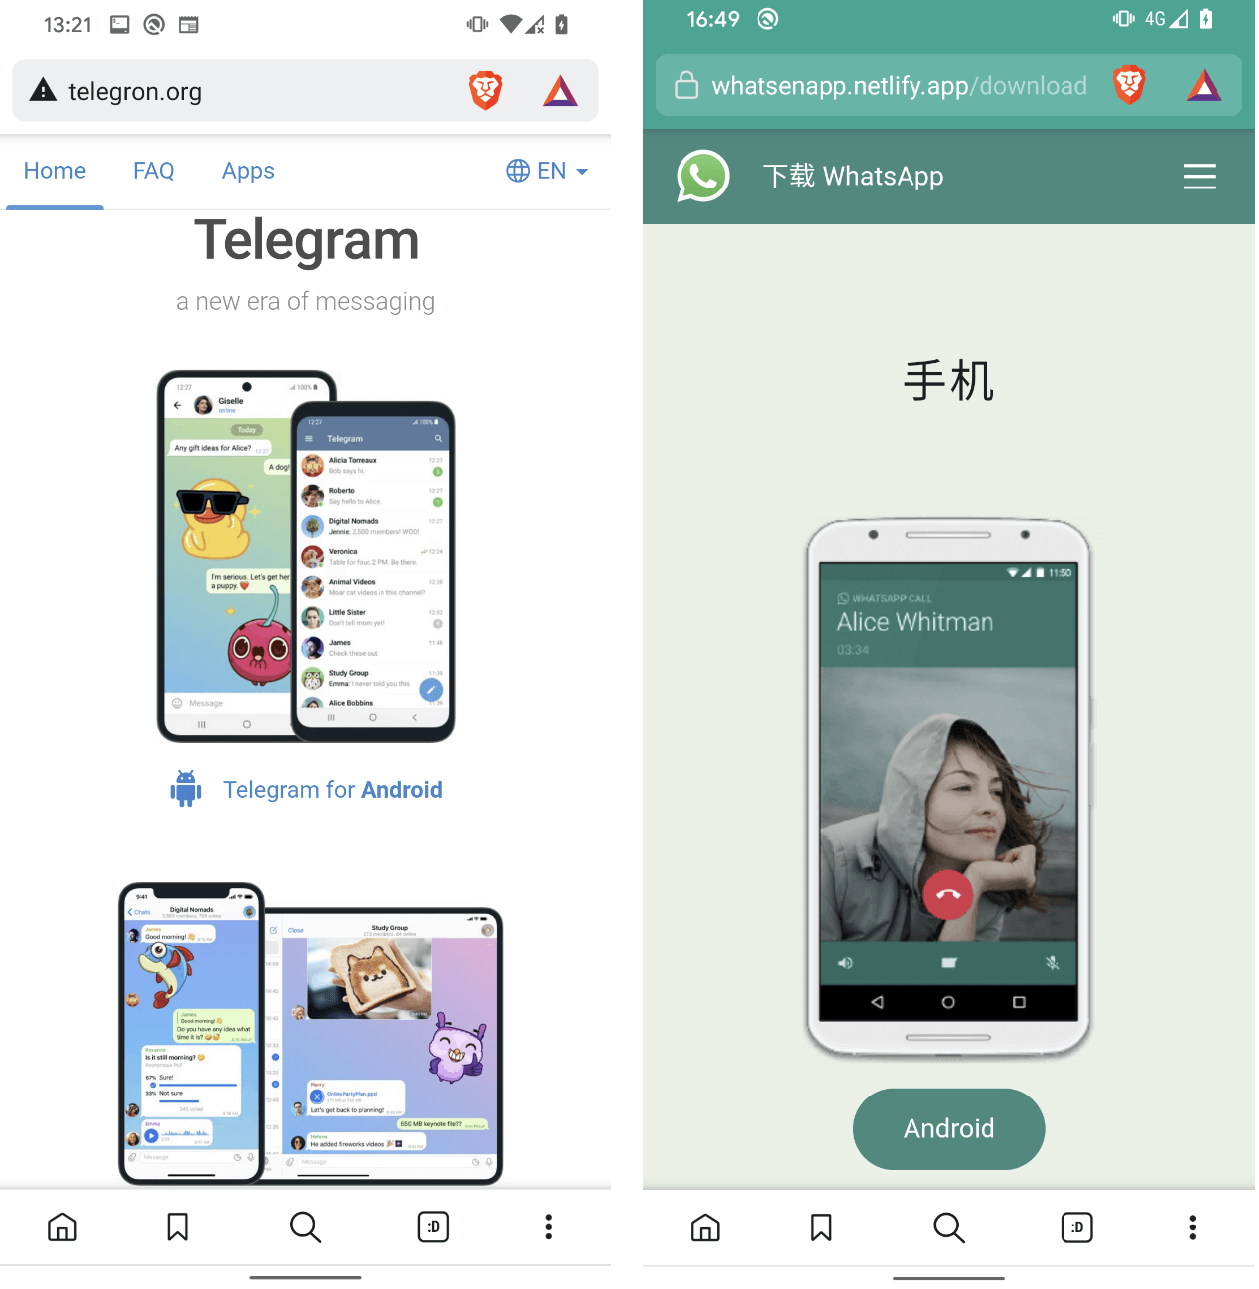 図 1. Telegram と WhatsApp を模倣した Web サイト